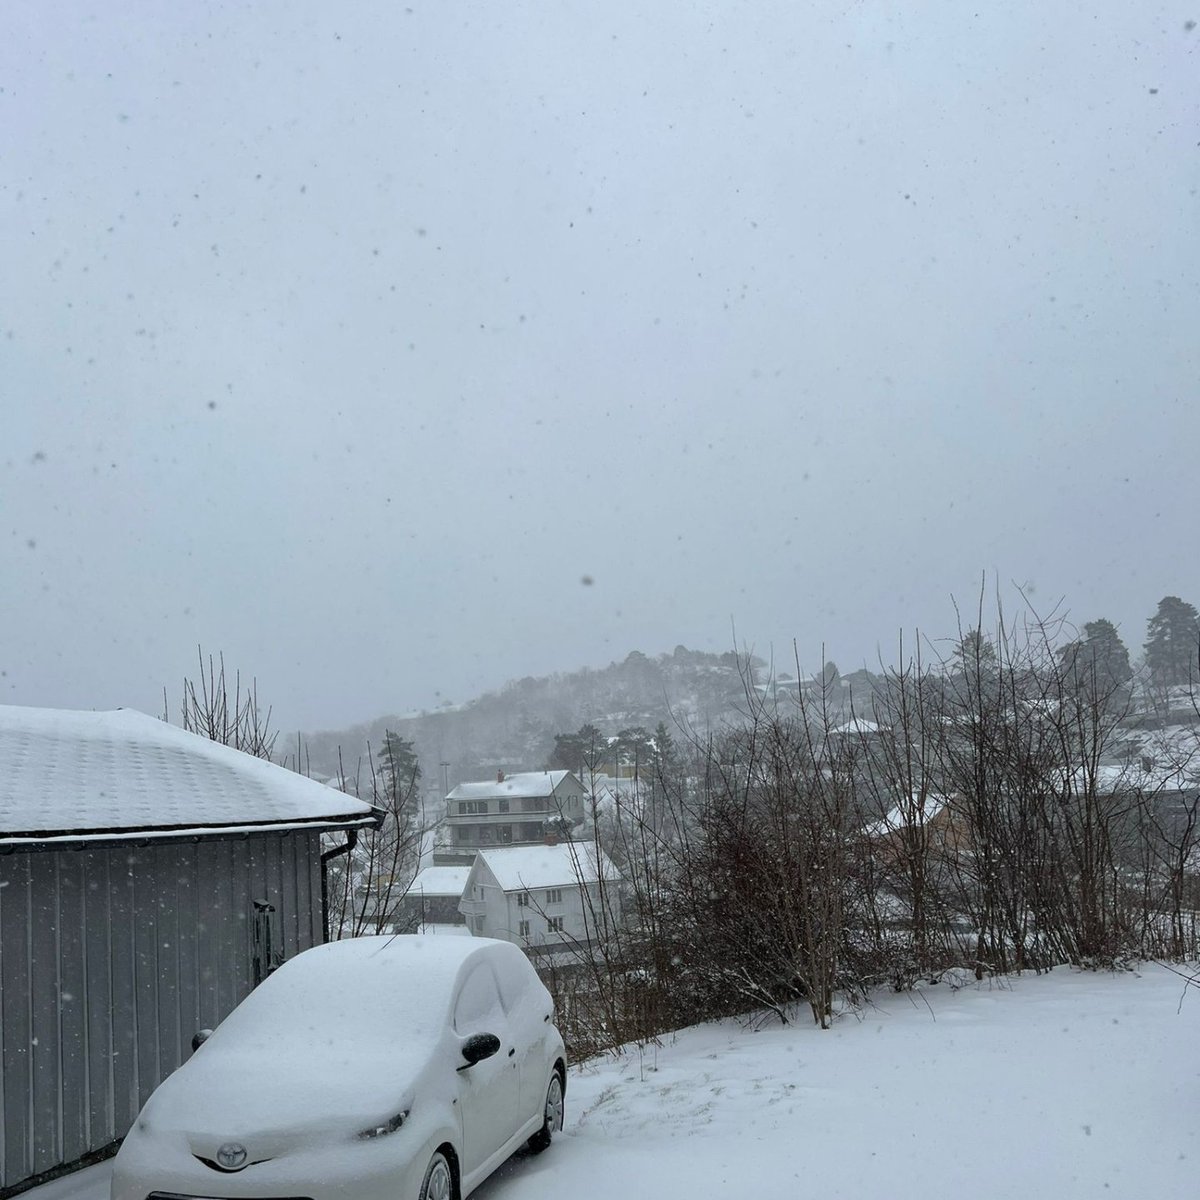 Global warming in #Noorwegen; nieuw pak sneeuw.